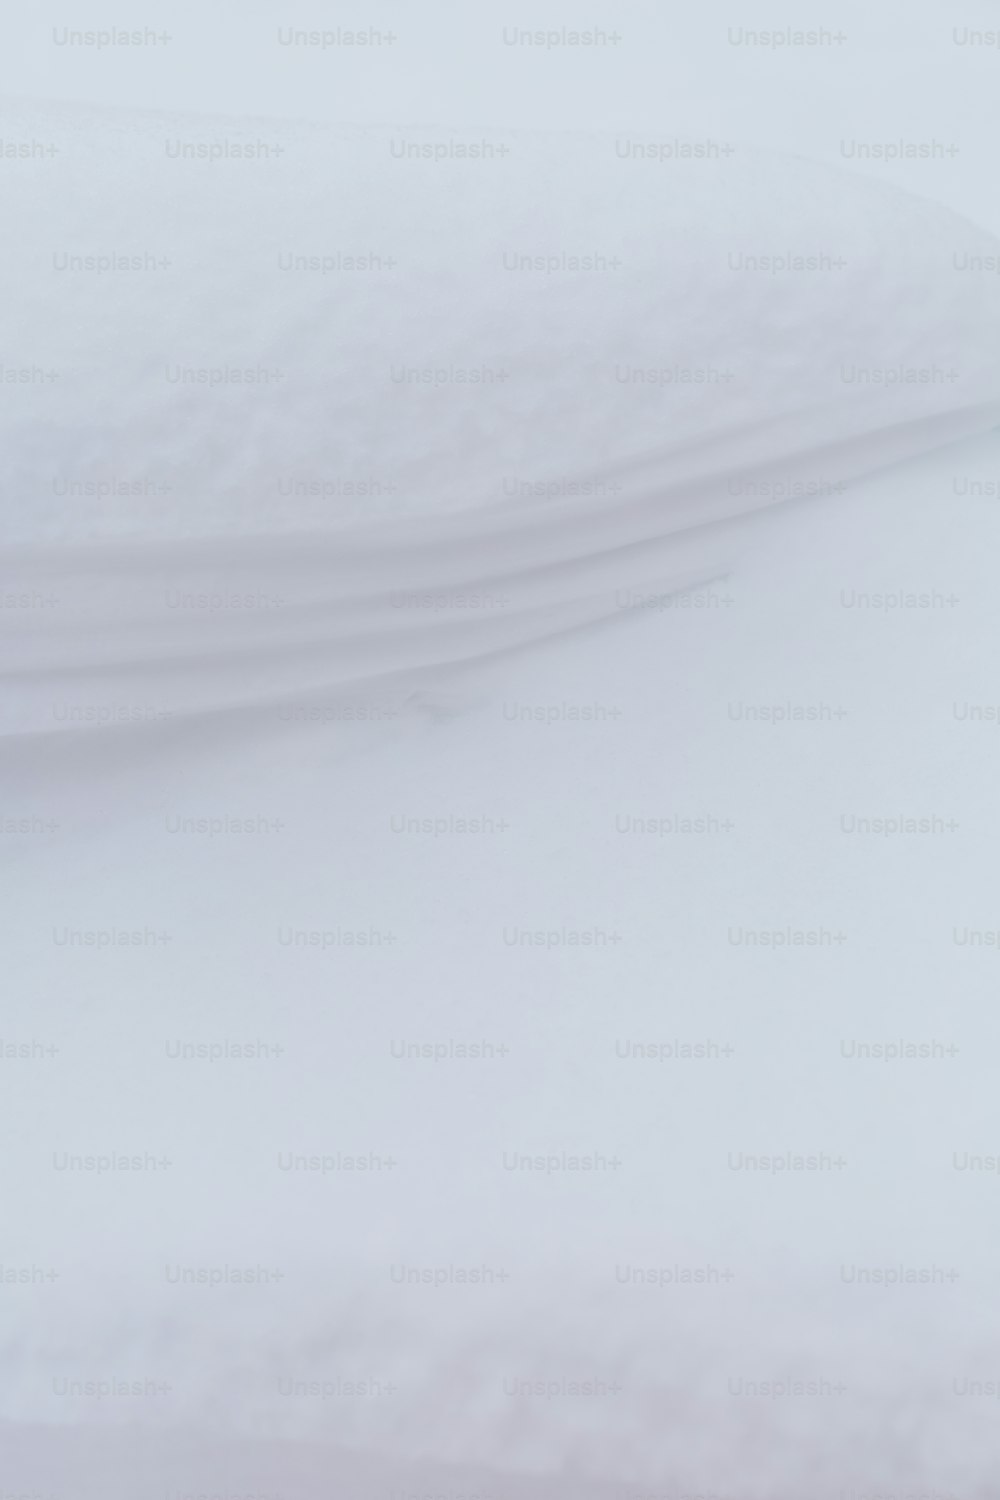 Un snowboarder está bajando una colina en la nieve